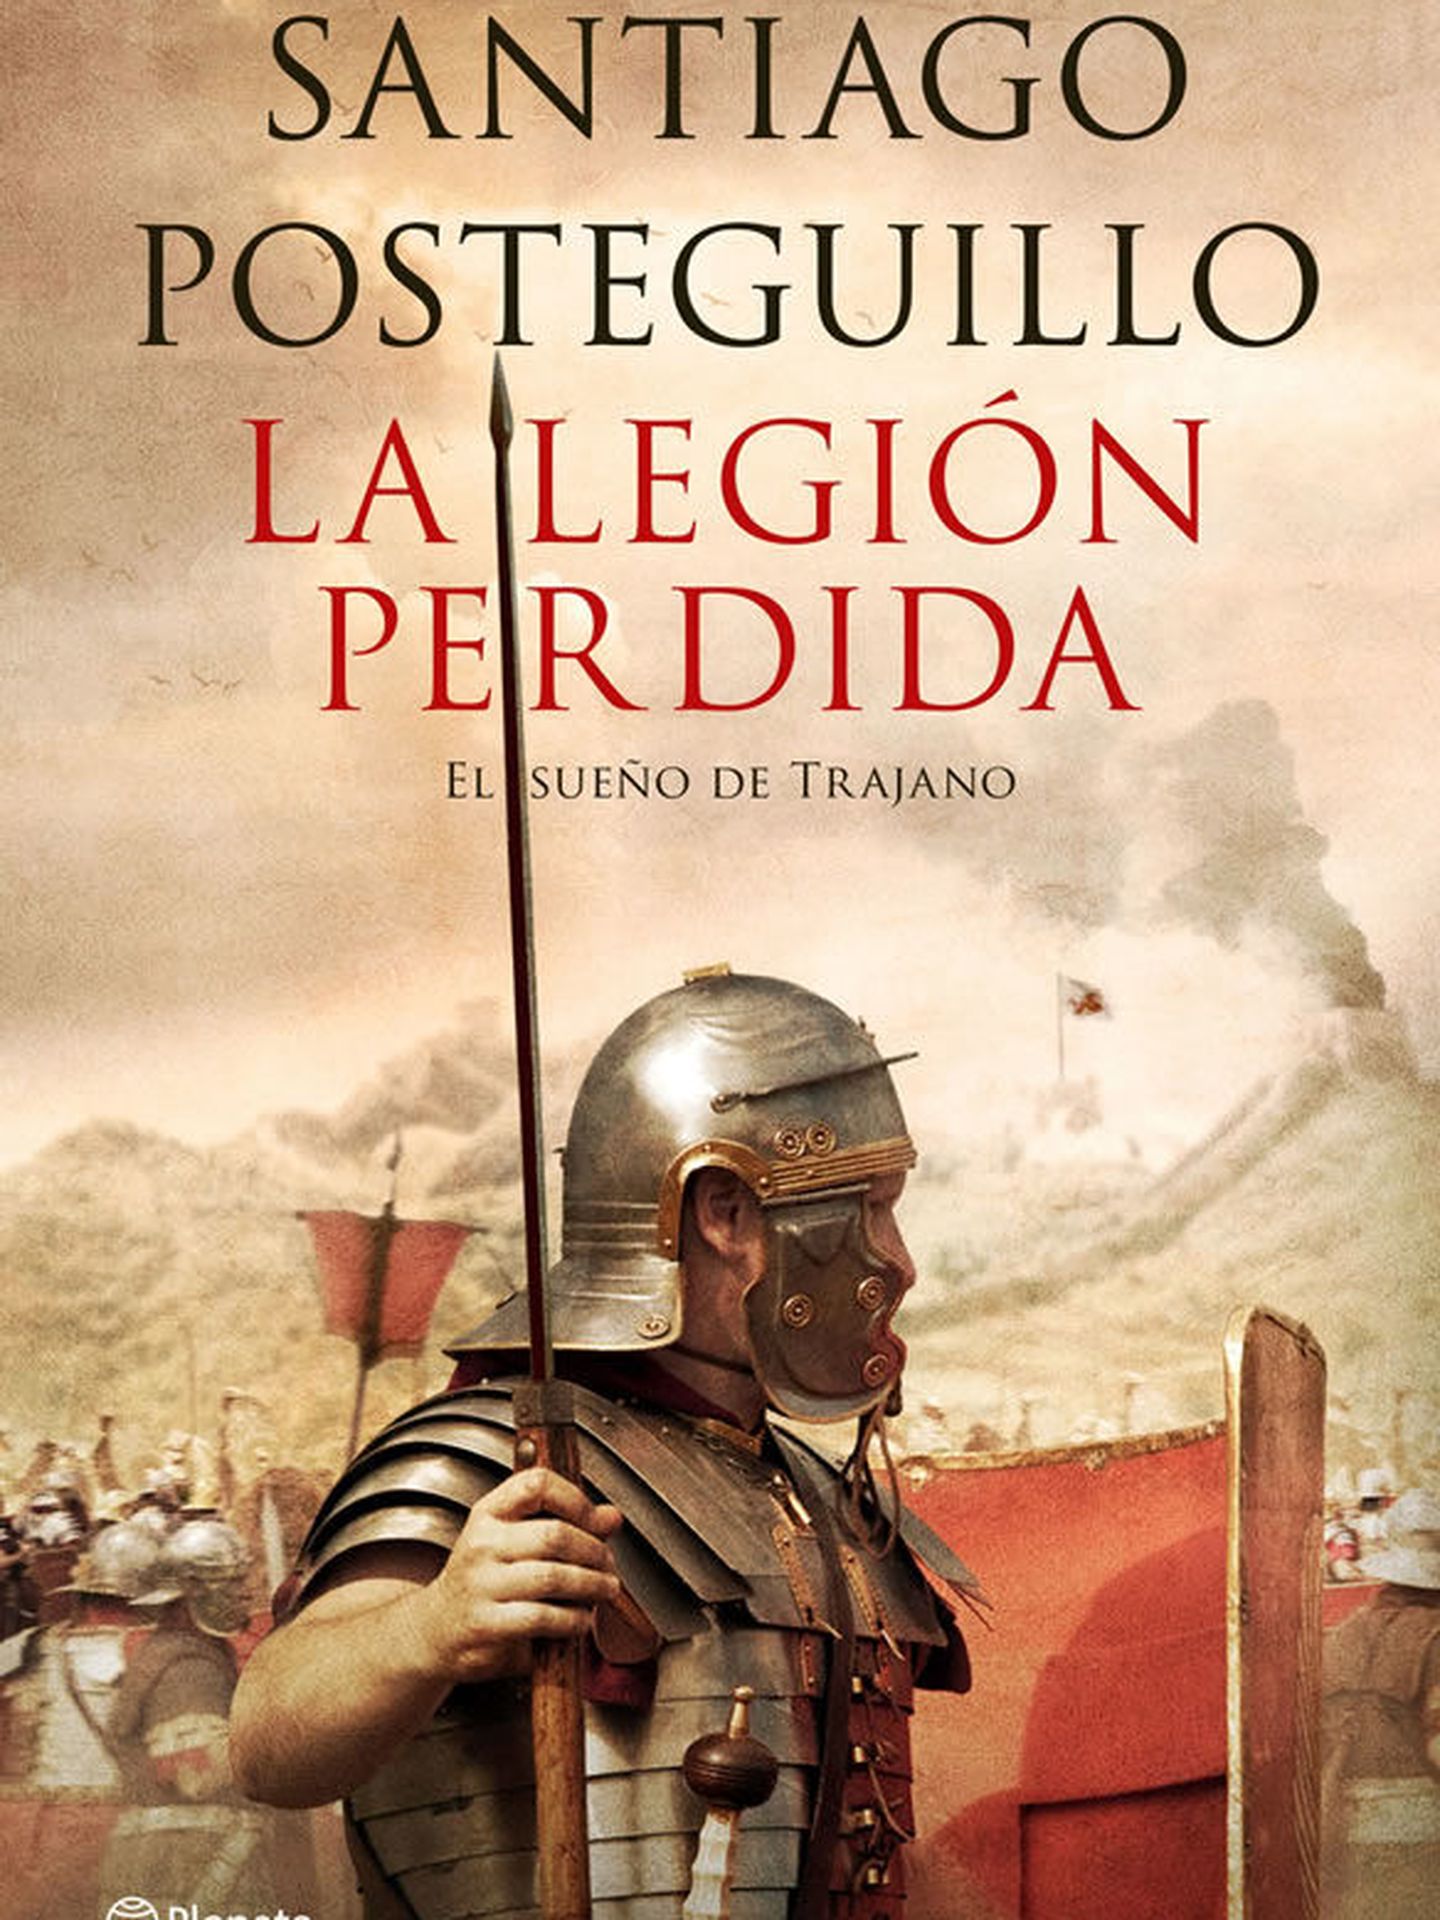 'La legión perdida', de Santiago Posteguillo